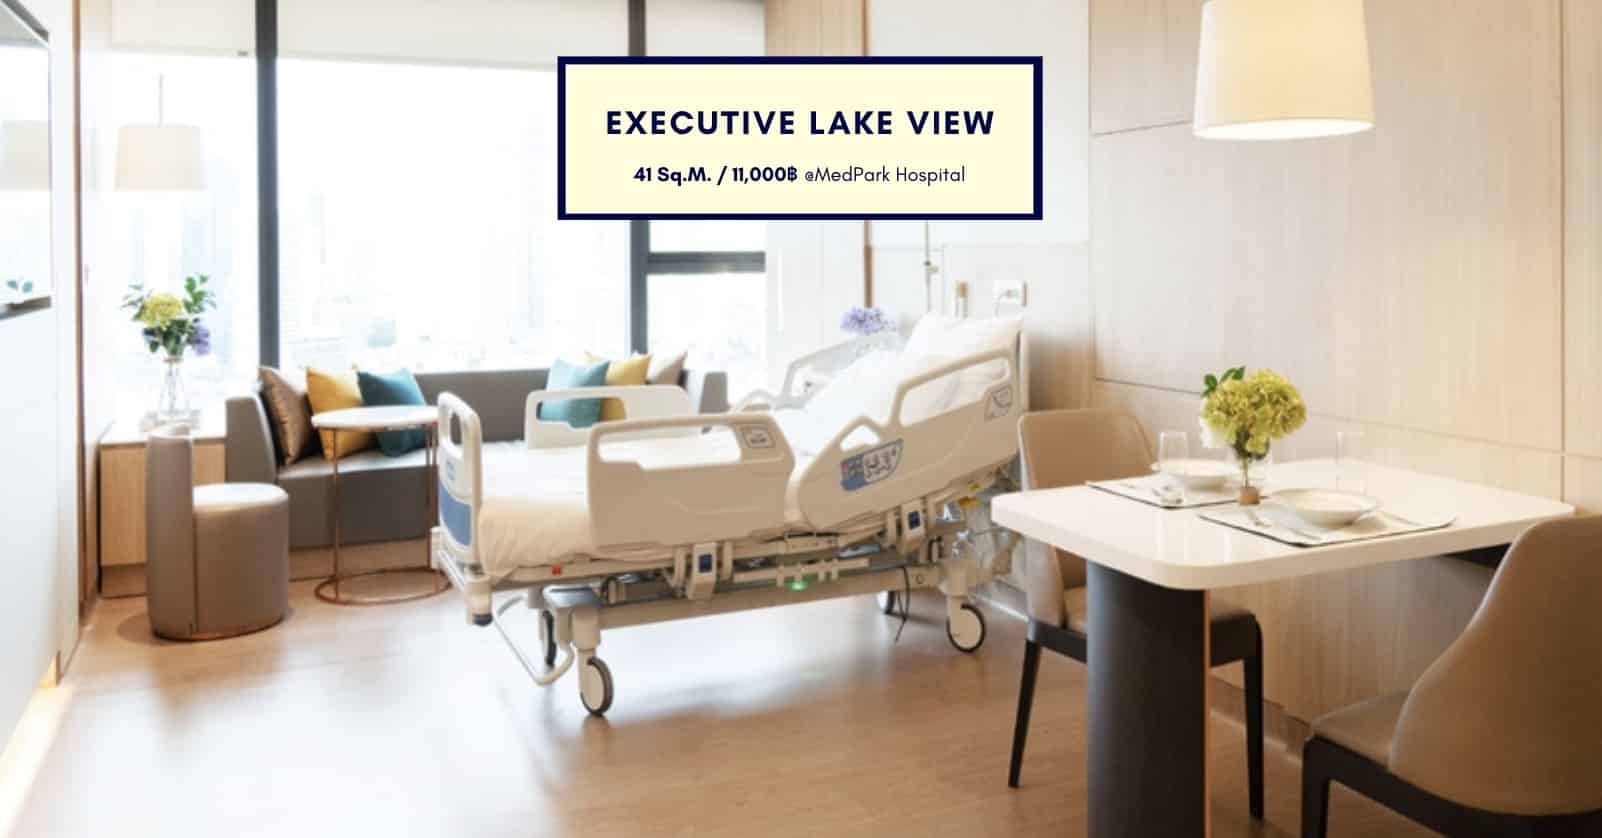 ห้อง Executive Lake View โรงพยาบาลเมดพาร์ค